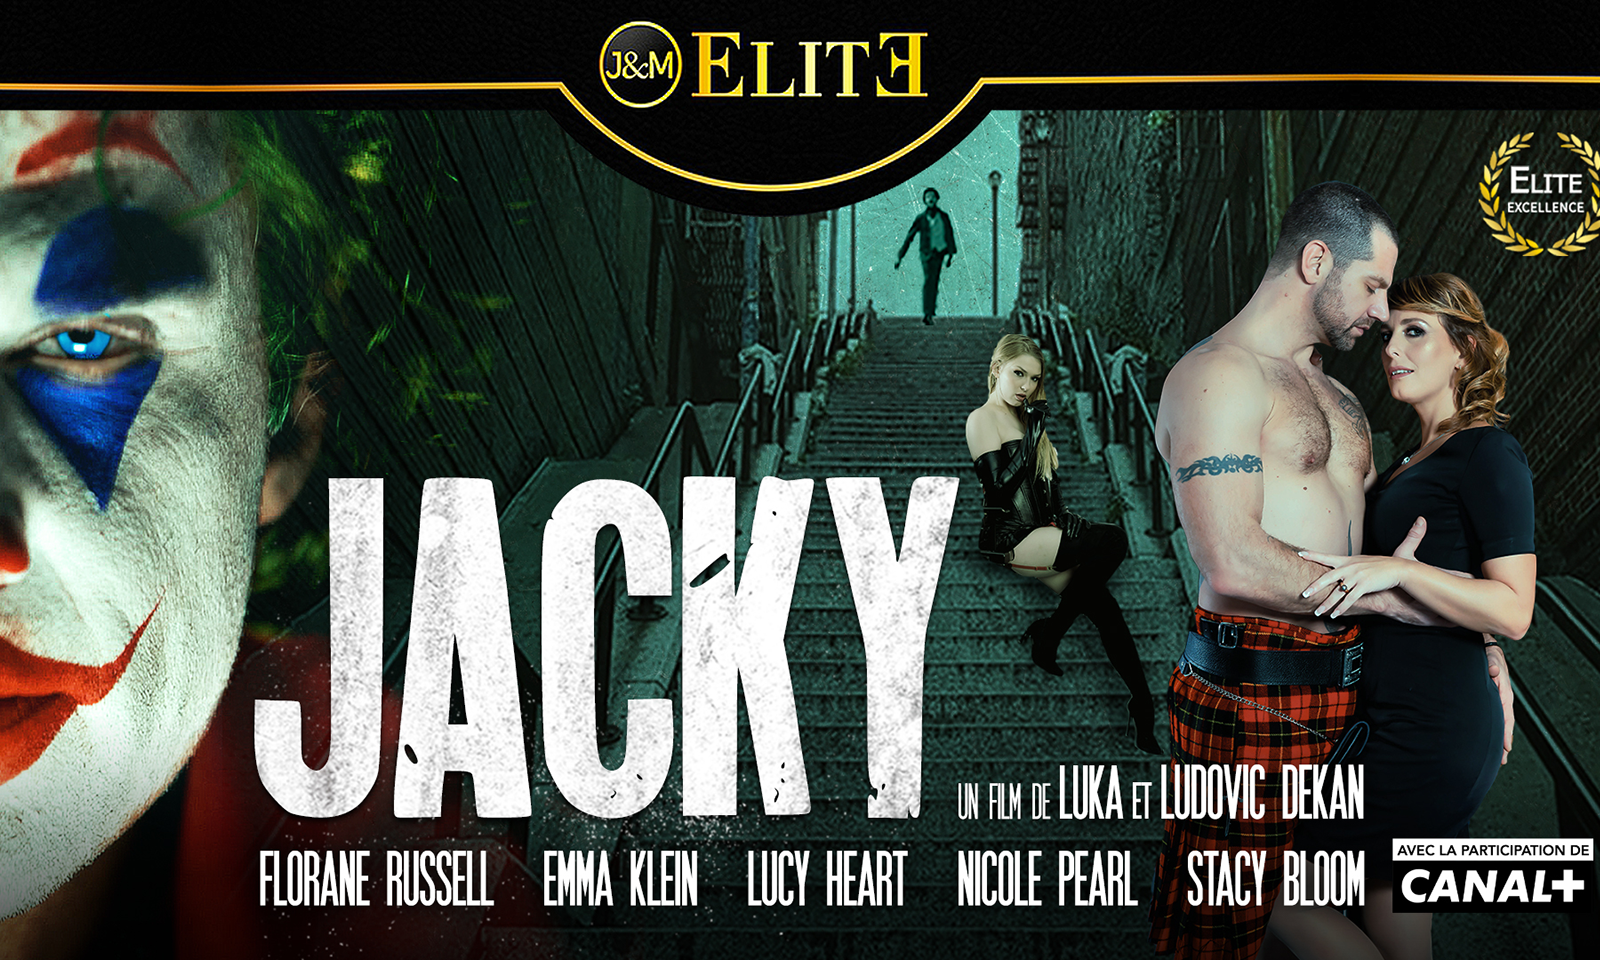 Jacquie & Michel Elite Announces 'Jacky' Parody